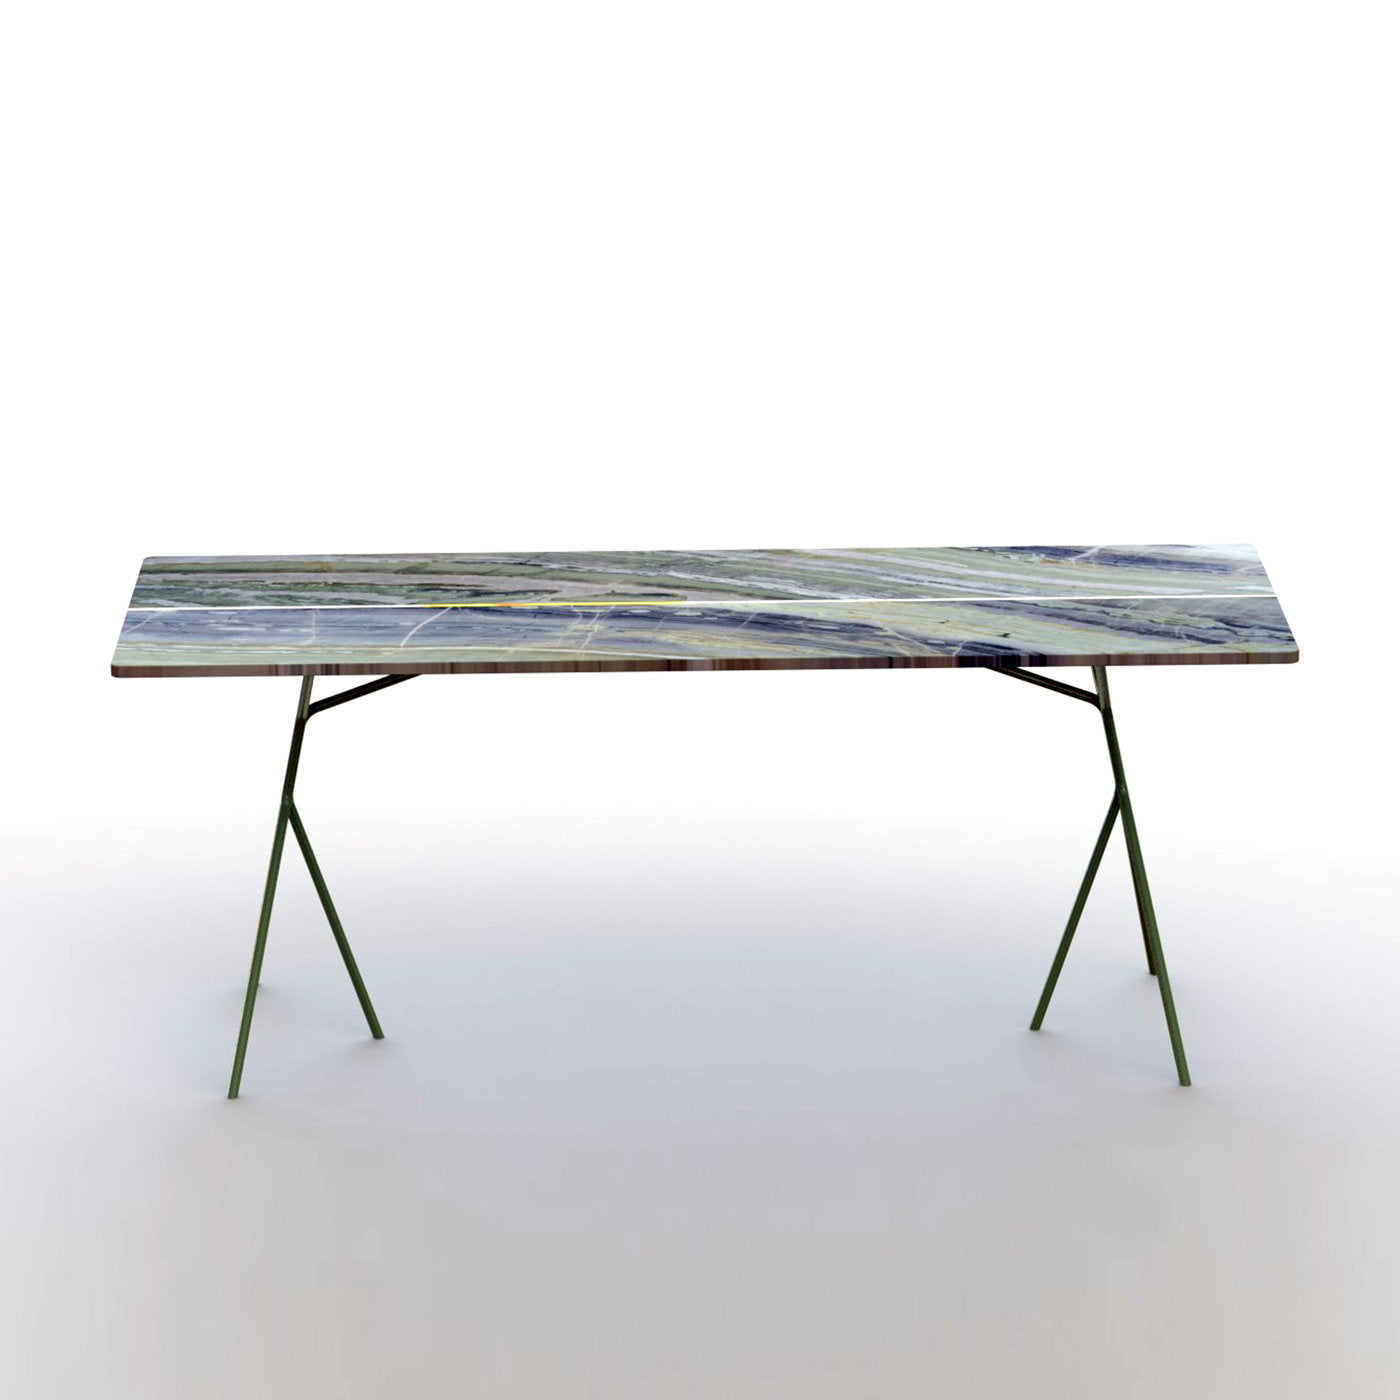 Split Table in River Jade Marble - Alternative view 1